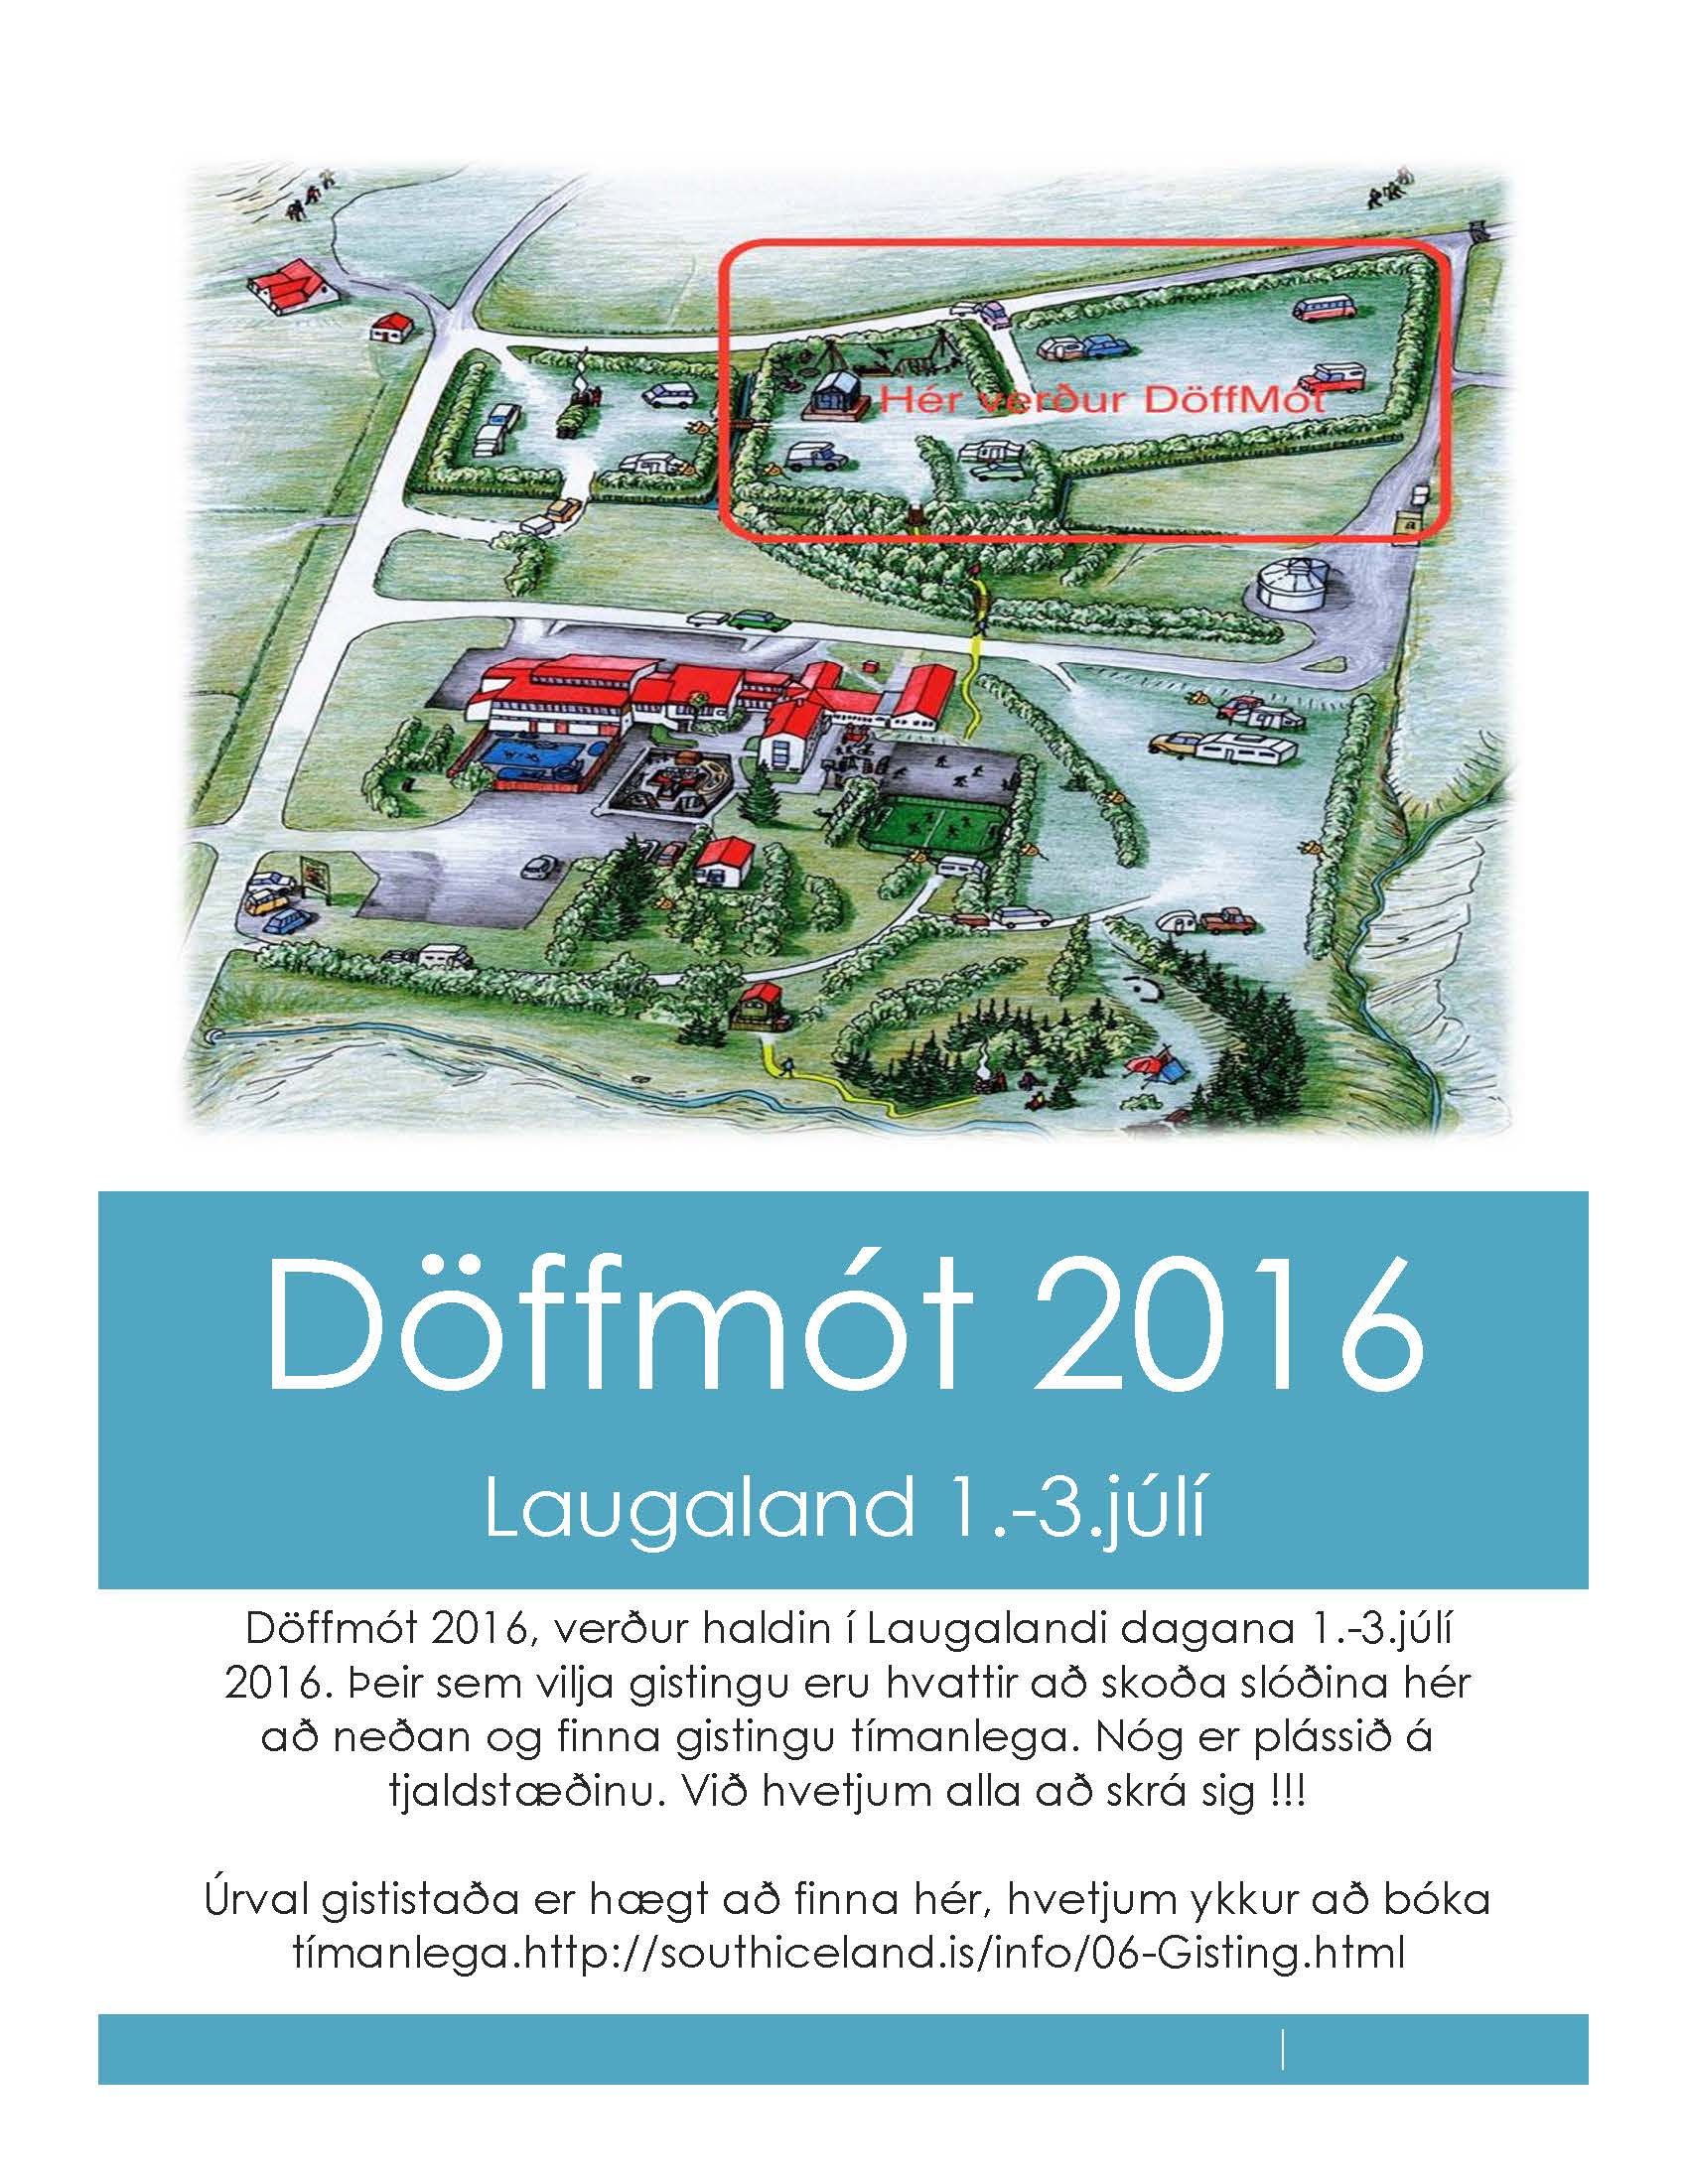 Doffmot-2016